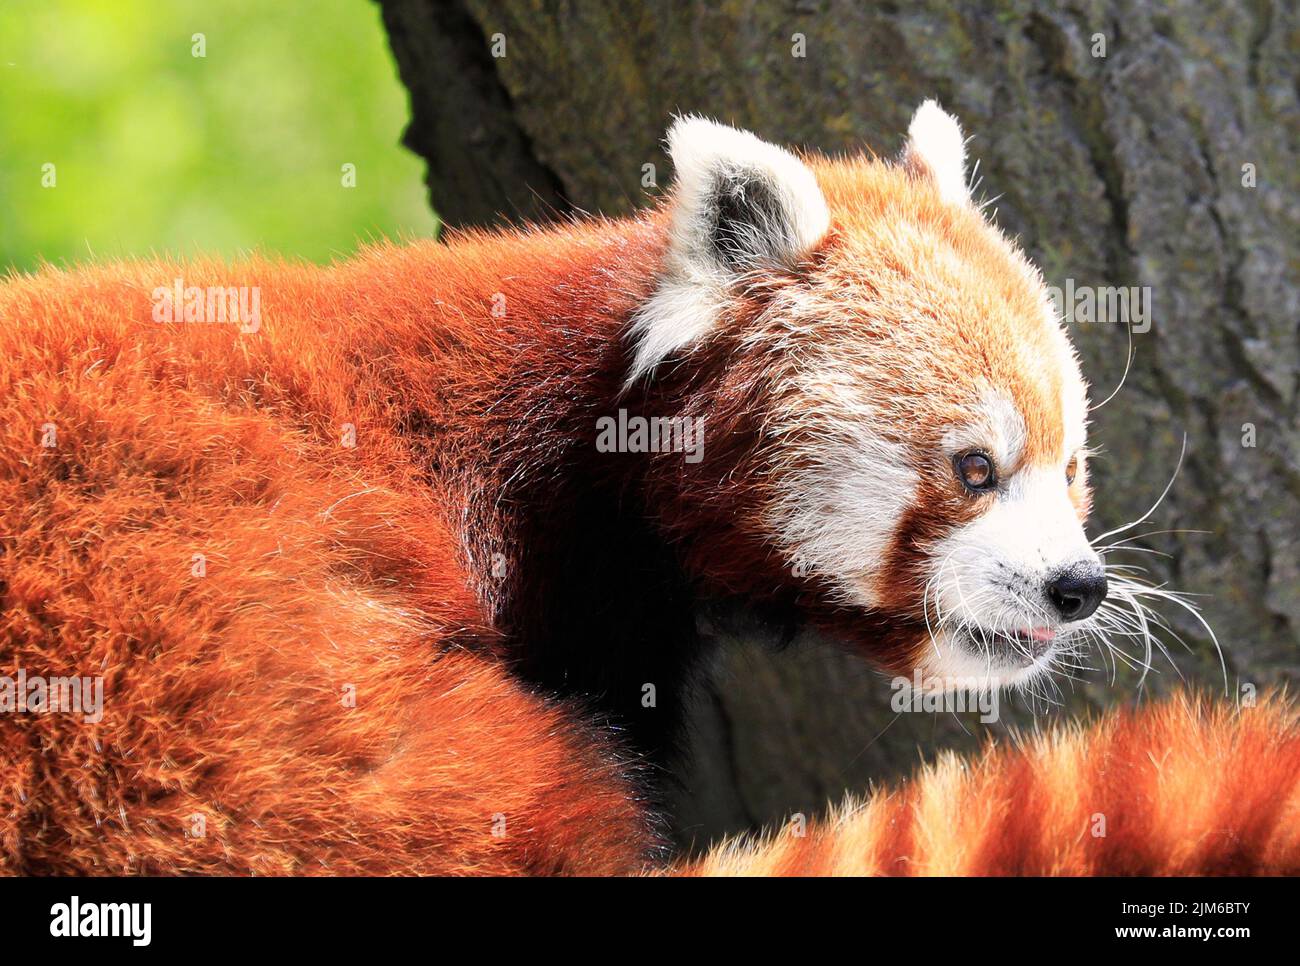 Retrato del oso panda rojo de cerca sentado en un árbol con fondo verde Foto de stock